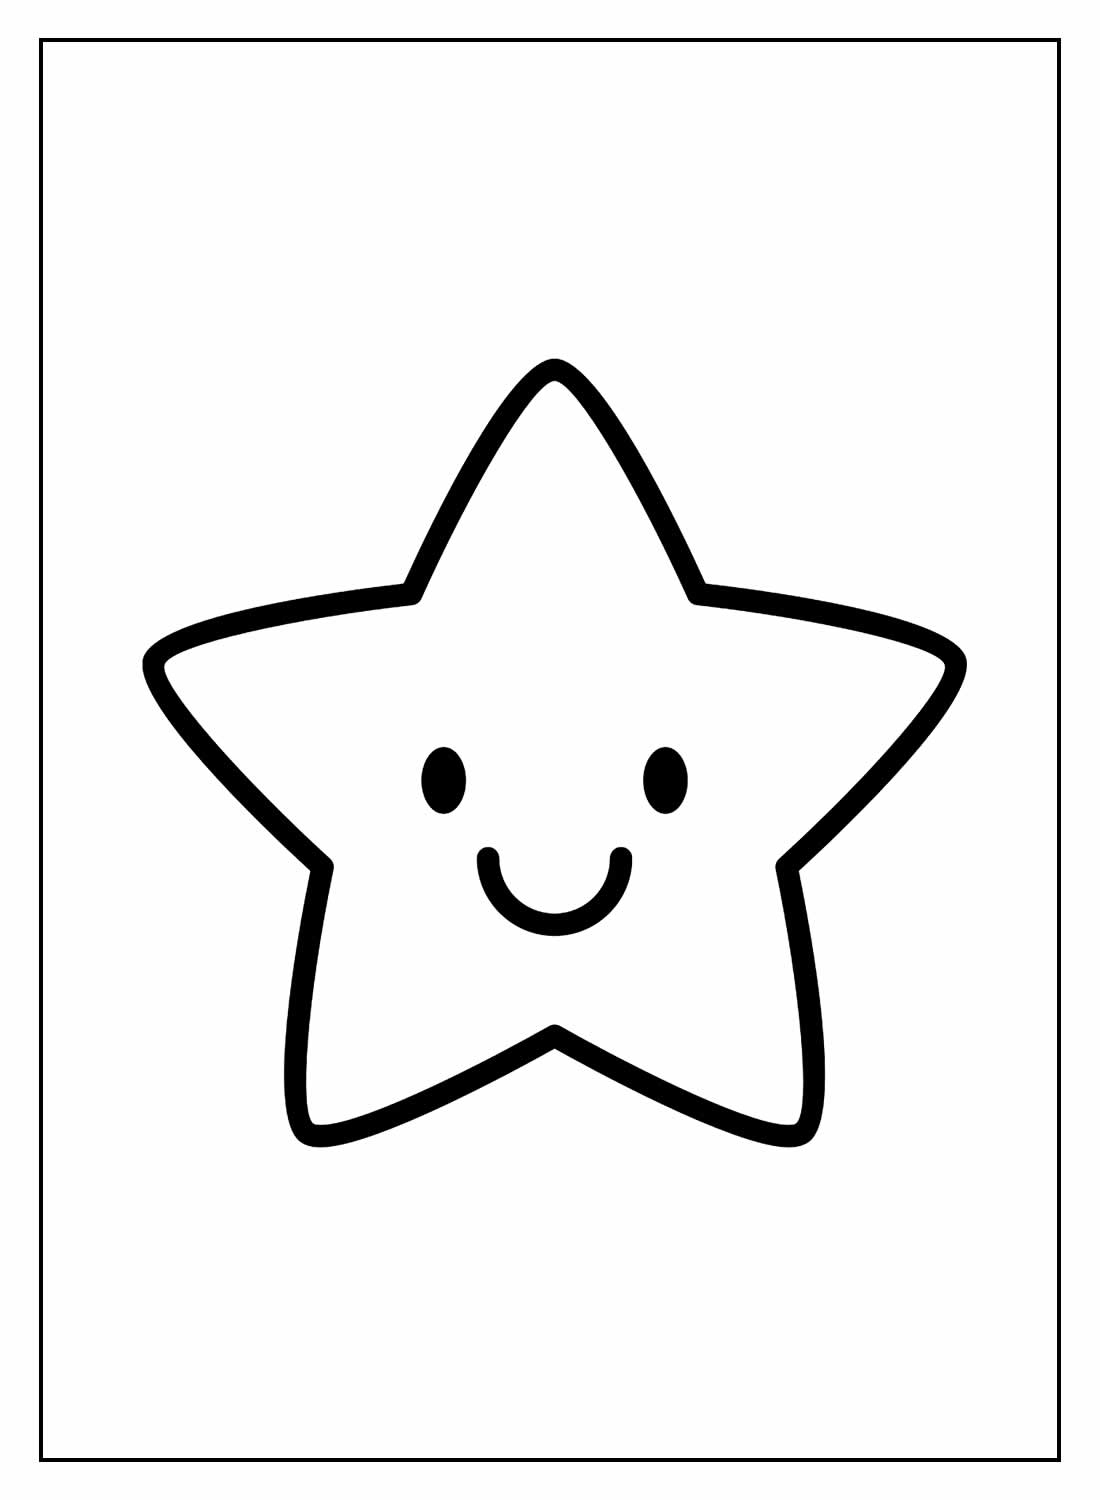 Раскраски Звезда. Лучшие картинки для детей скачивайте и распечатывайте